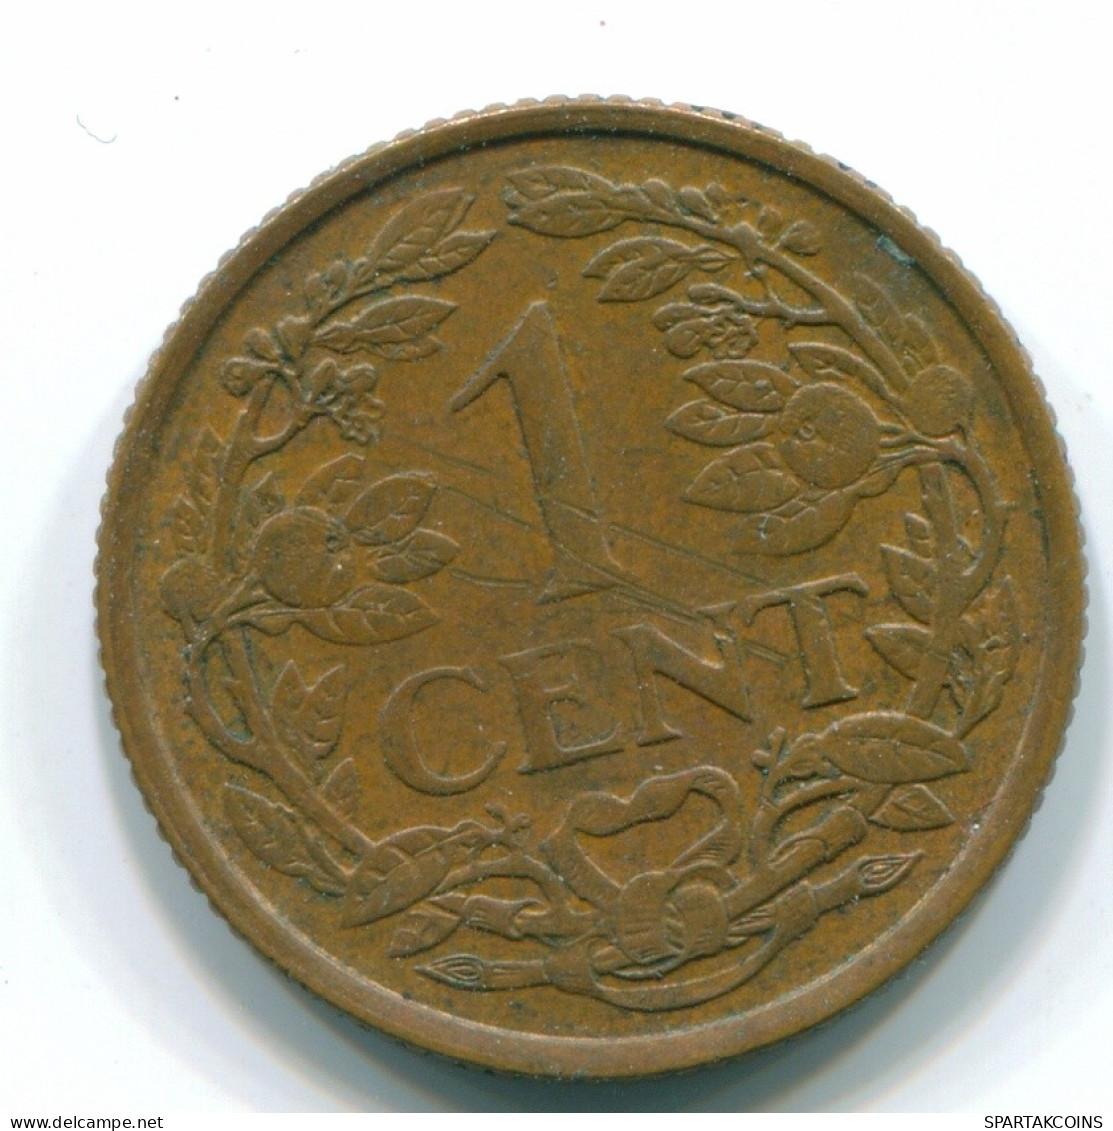 1 CENT 1963 NETHERLANDS ANTILLES Bronze Fish Colonial Coin #S11094.U.A - Antilles Néerlandaises